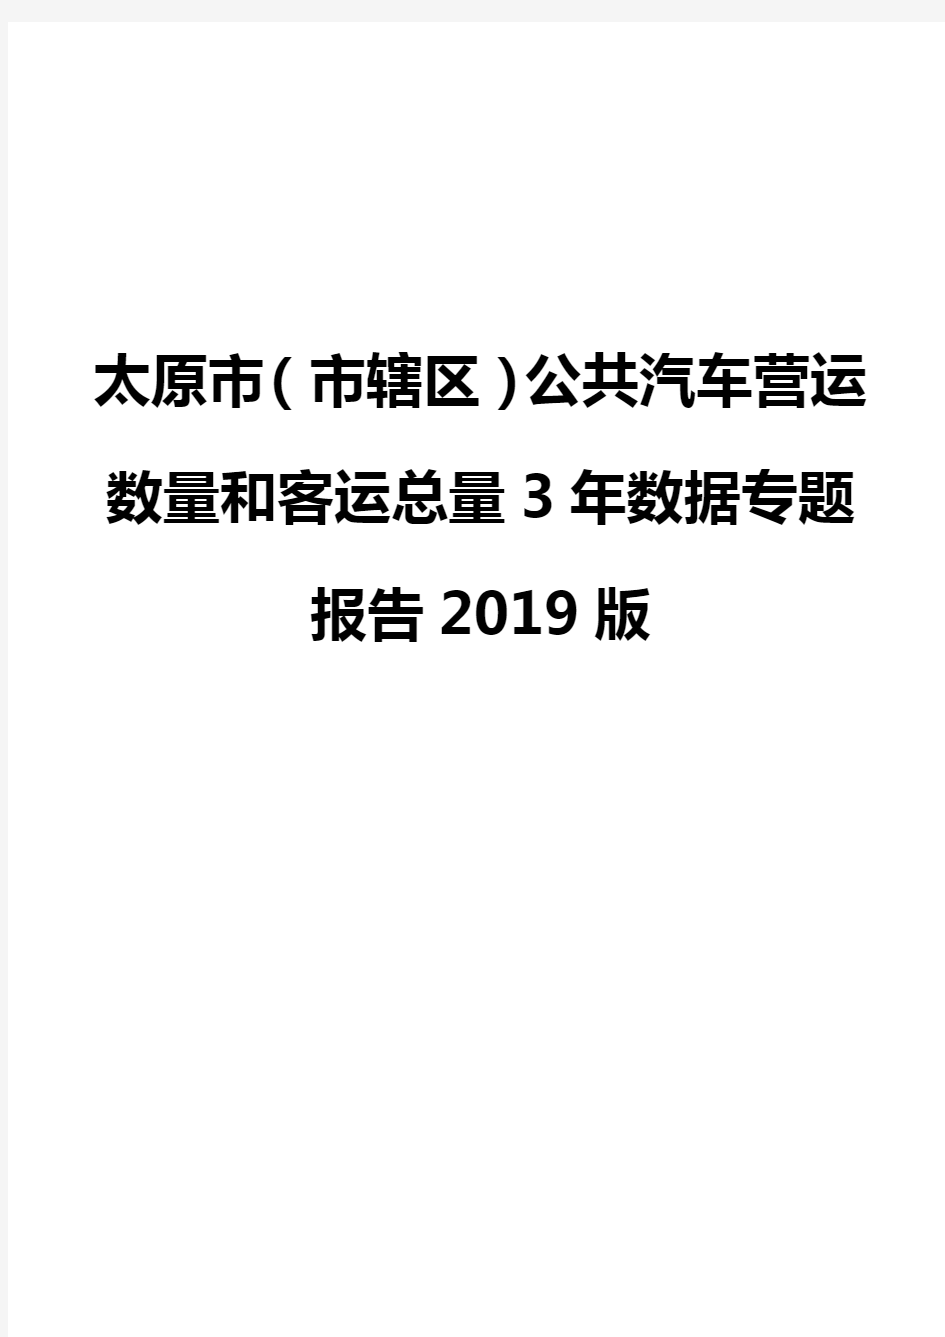 太原市(市辖区)公共汽车营运数量和客运总量3年数据专题报告2019版